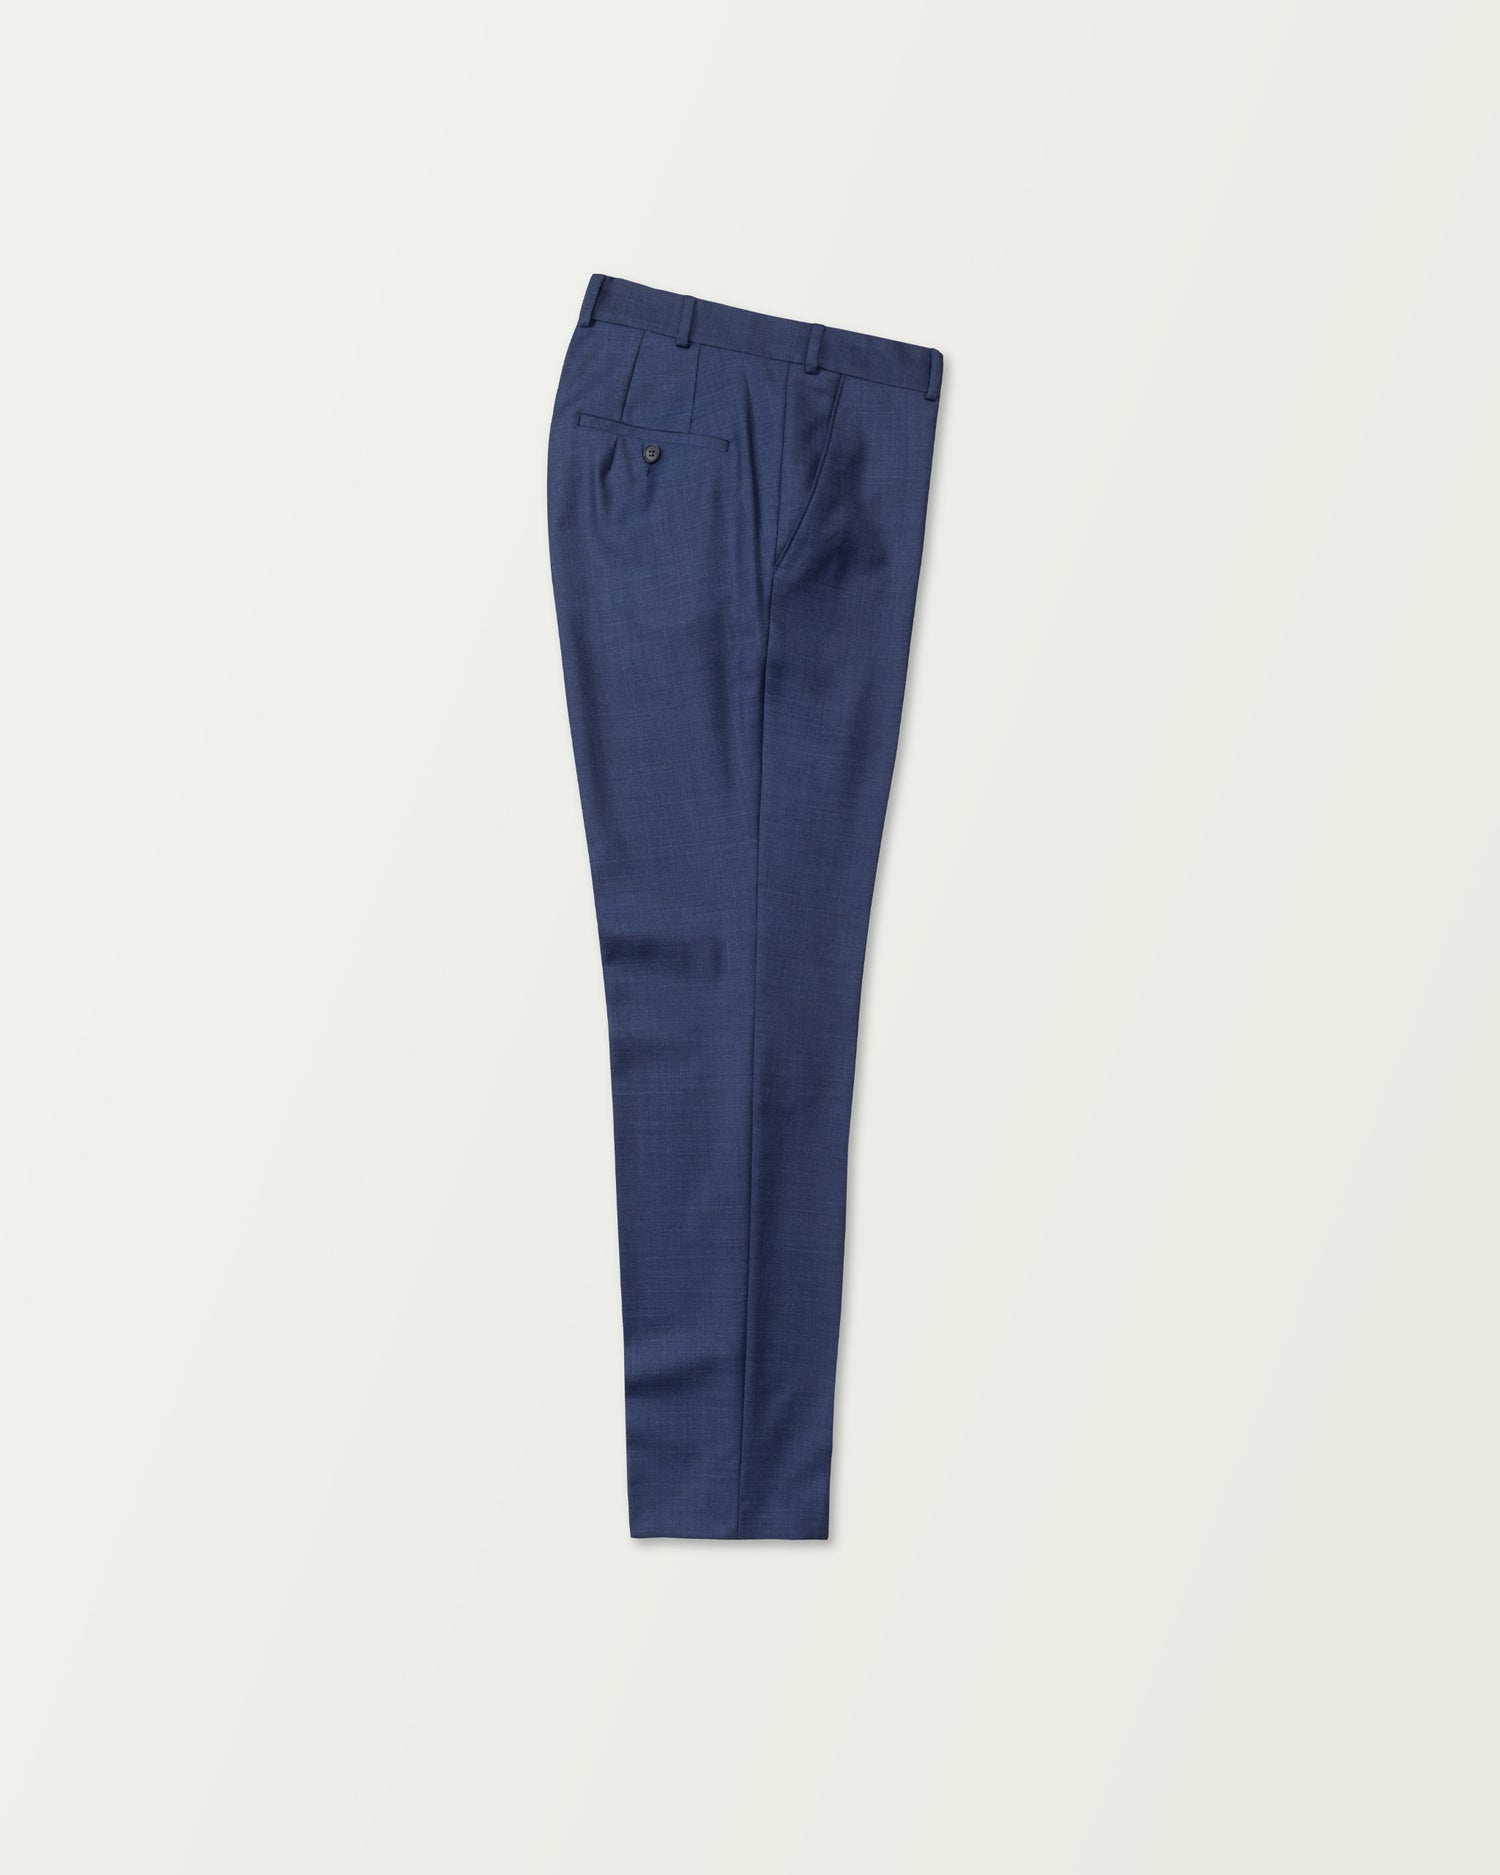 Elegant Premium Wool Trousers in Ocean Blue (8653409943882)